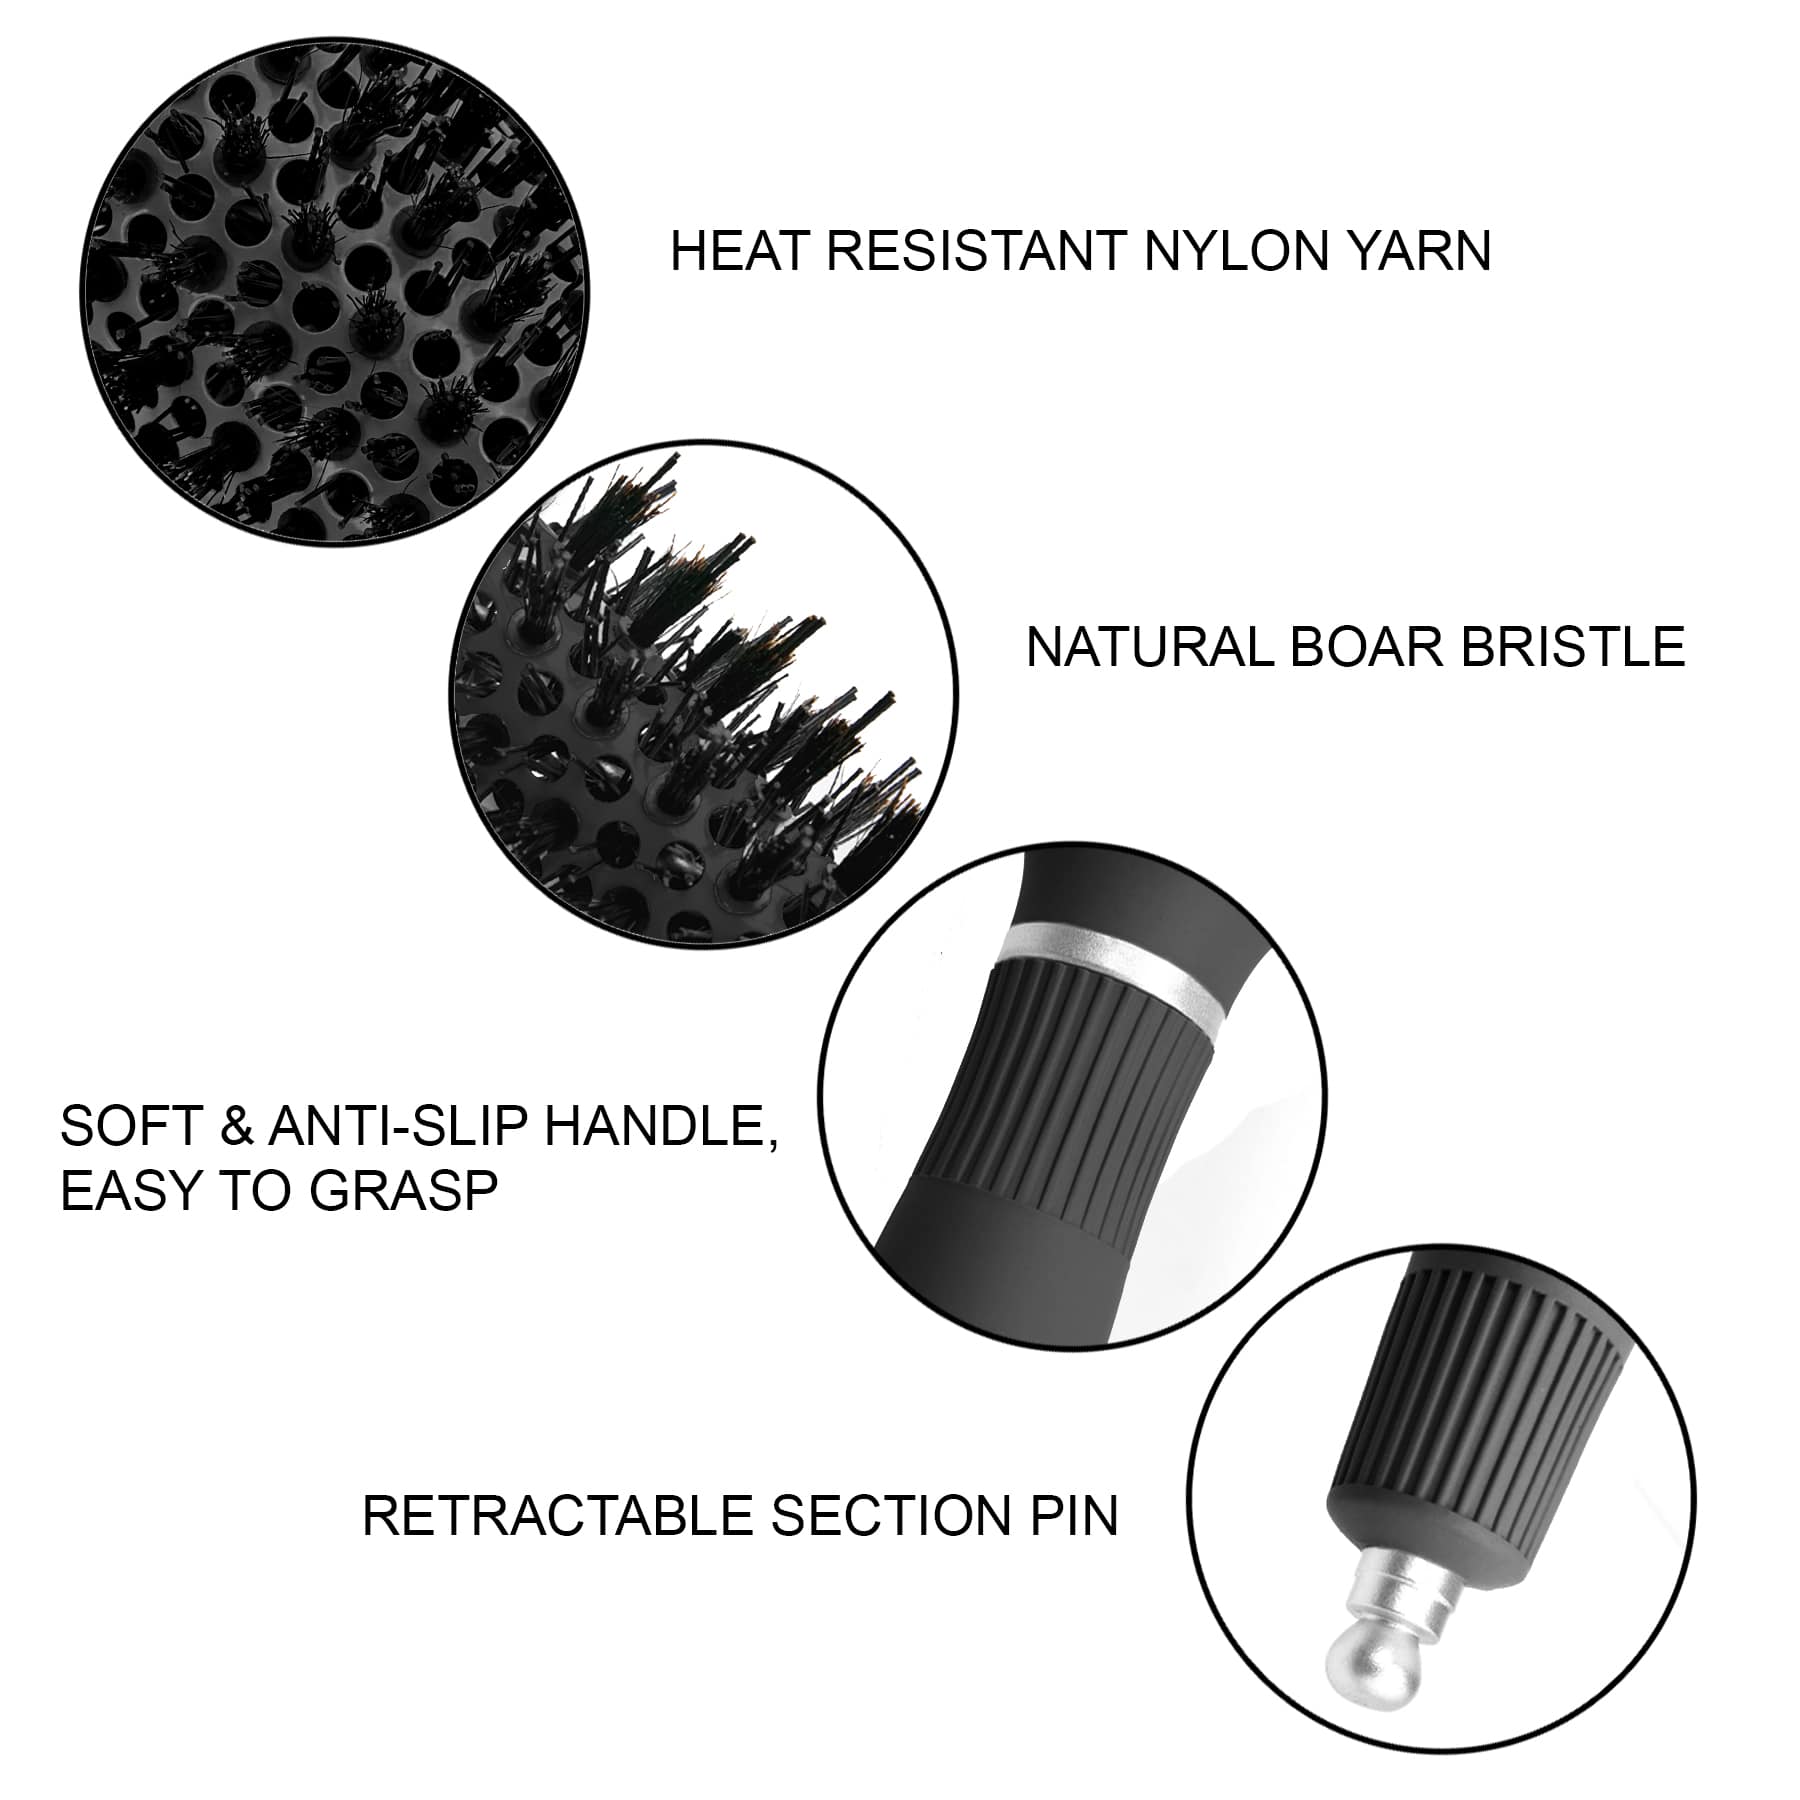 Ceramic/Ionic Round Hairbrush 1 inch / 25 mm - Black